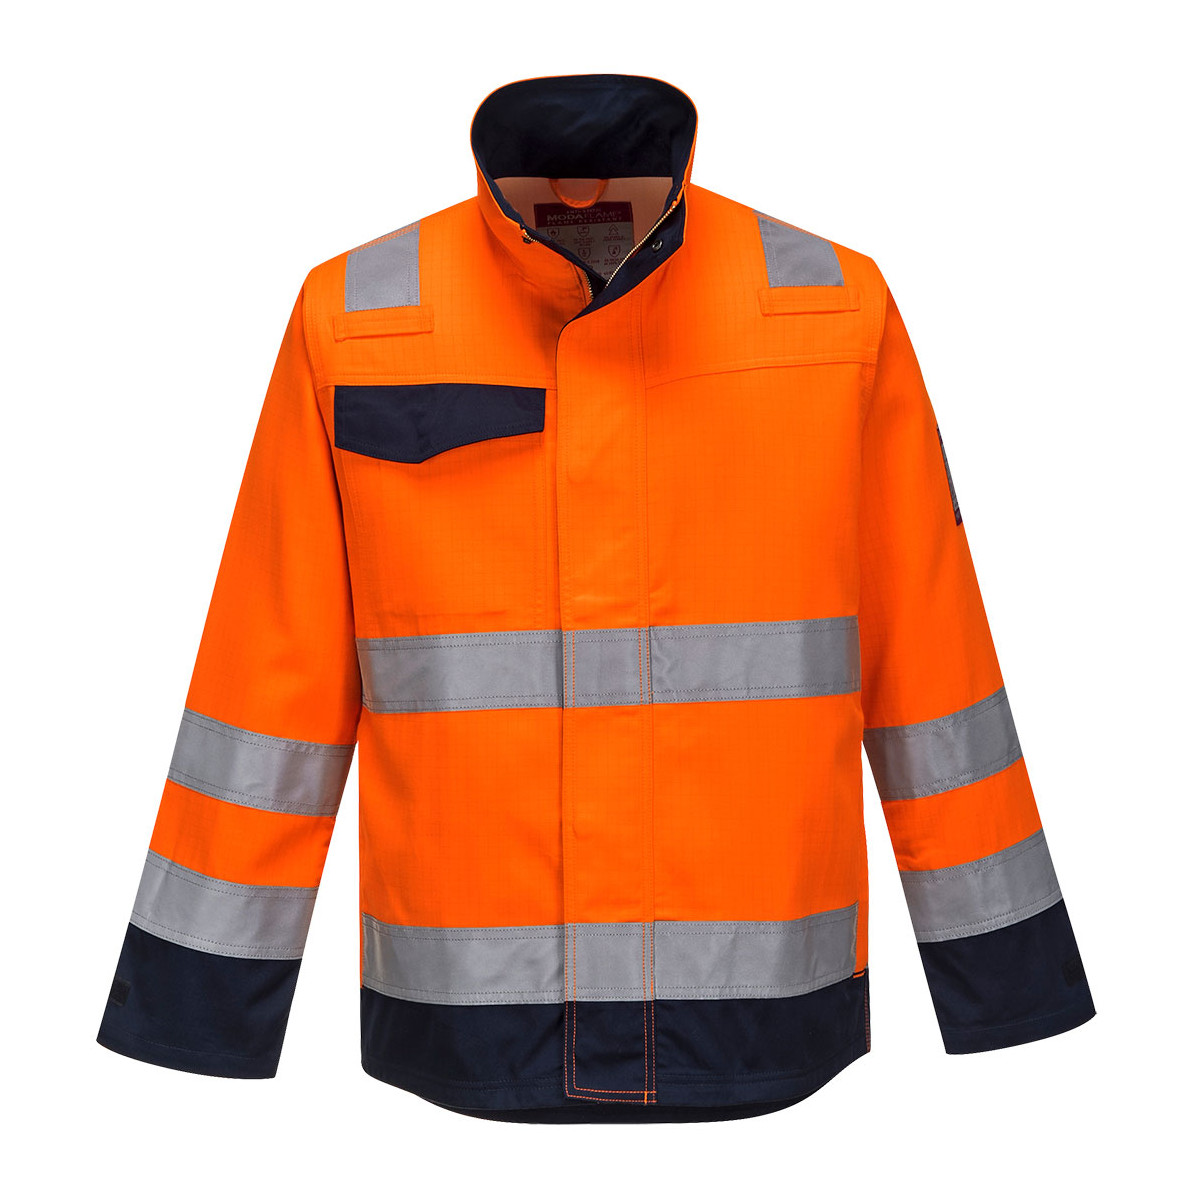 trudnopalna-odziez - Bluza trudnopalna ostrzegawcza z pasami odblaskowymi MV35 Portwest